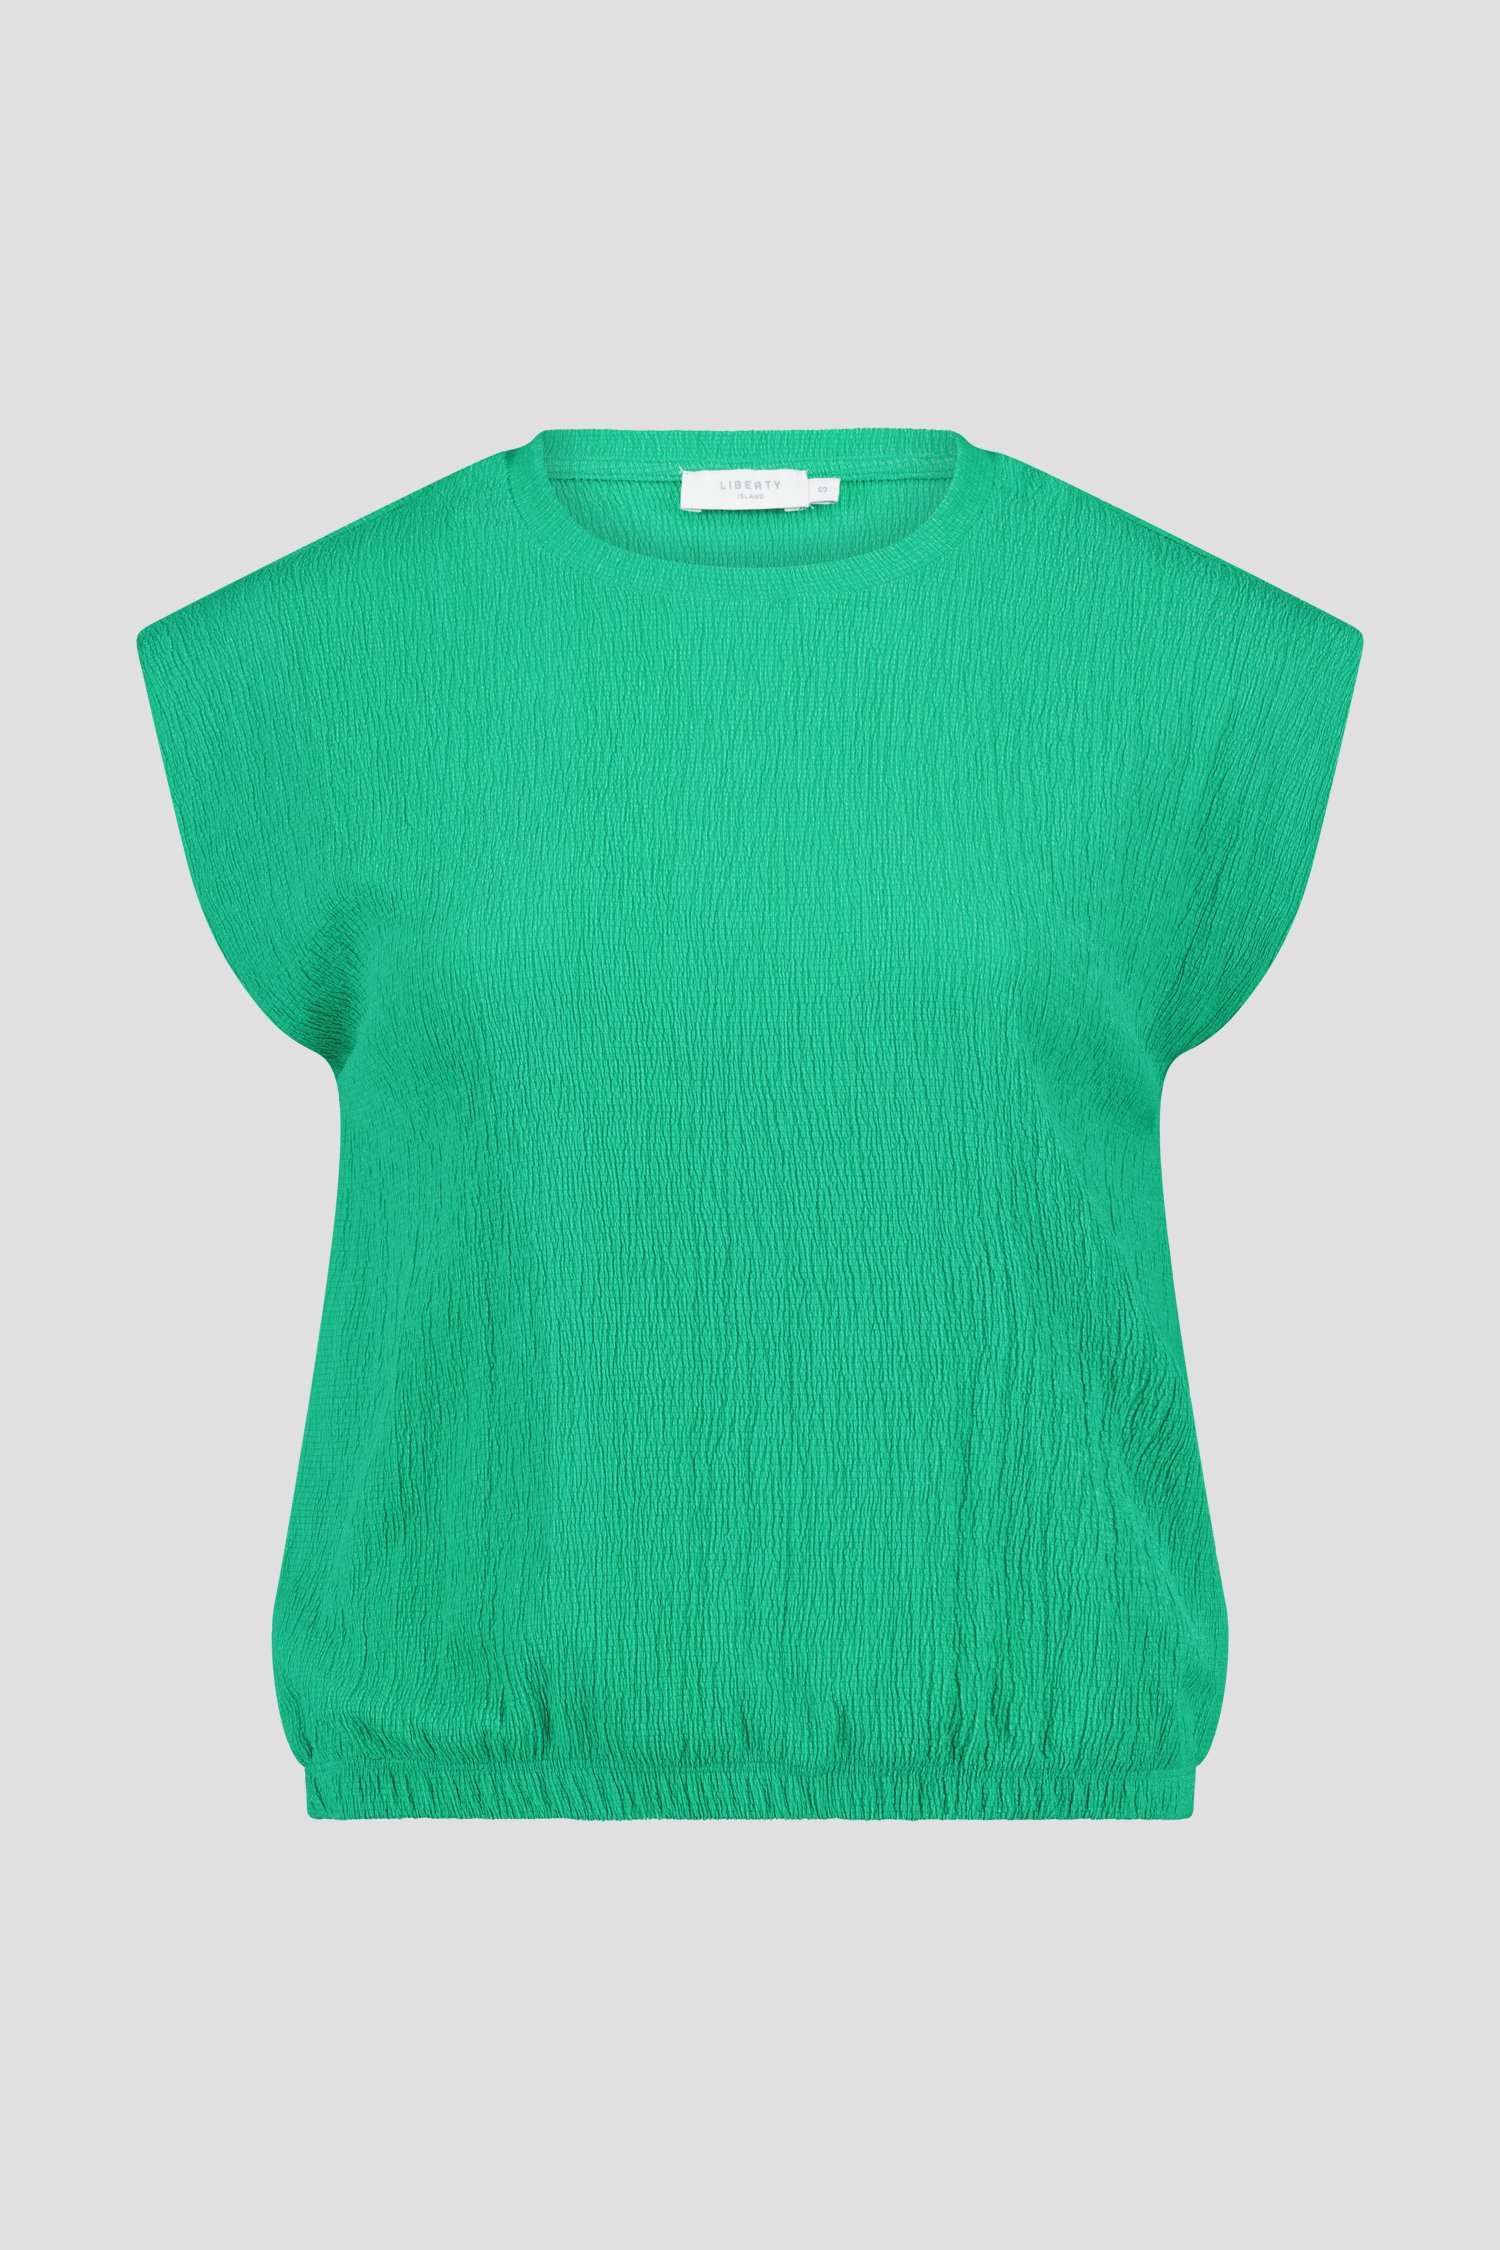 Groen T-shirt zonder mouwen  van Liberty Island voor Dames